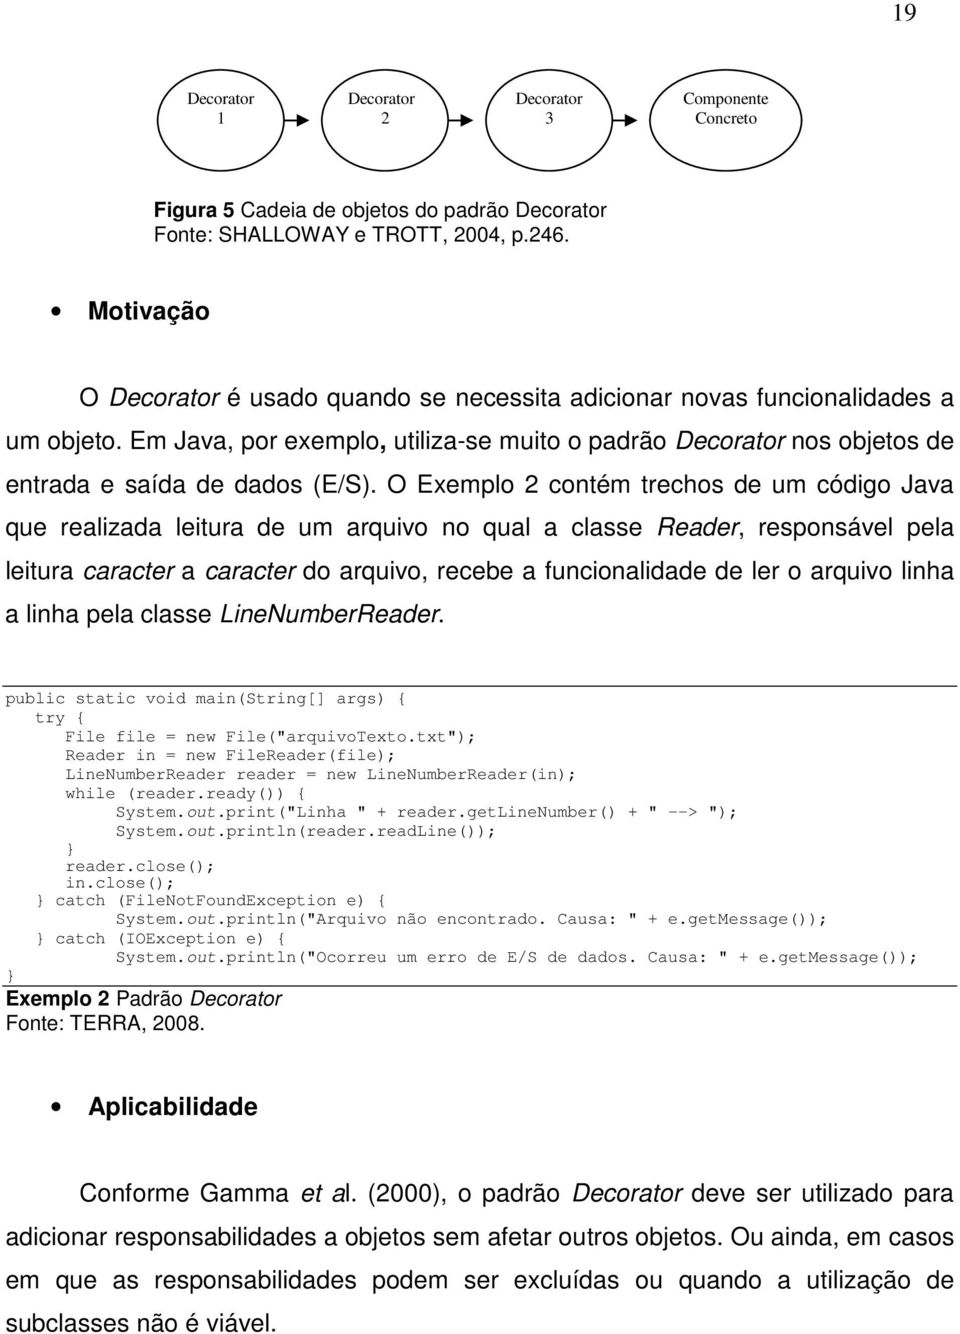 O Exemplo 2 contém trechos de um código Java que realizada leitura de um arquivo no qual a classe Reader, responsável pela leitura caracter a caracter do arquivo, recebe a funcionalidade de ler o